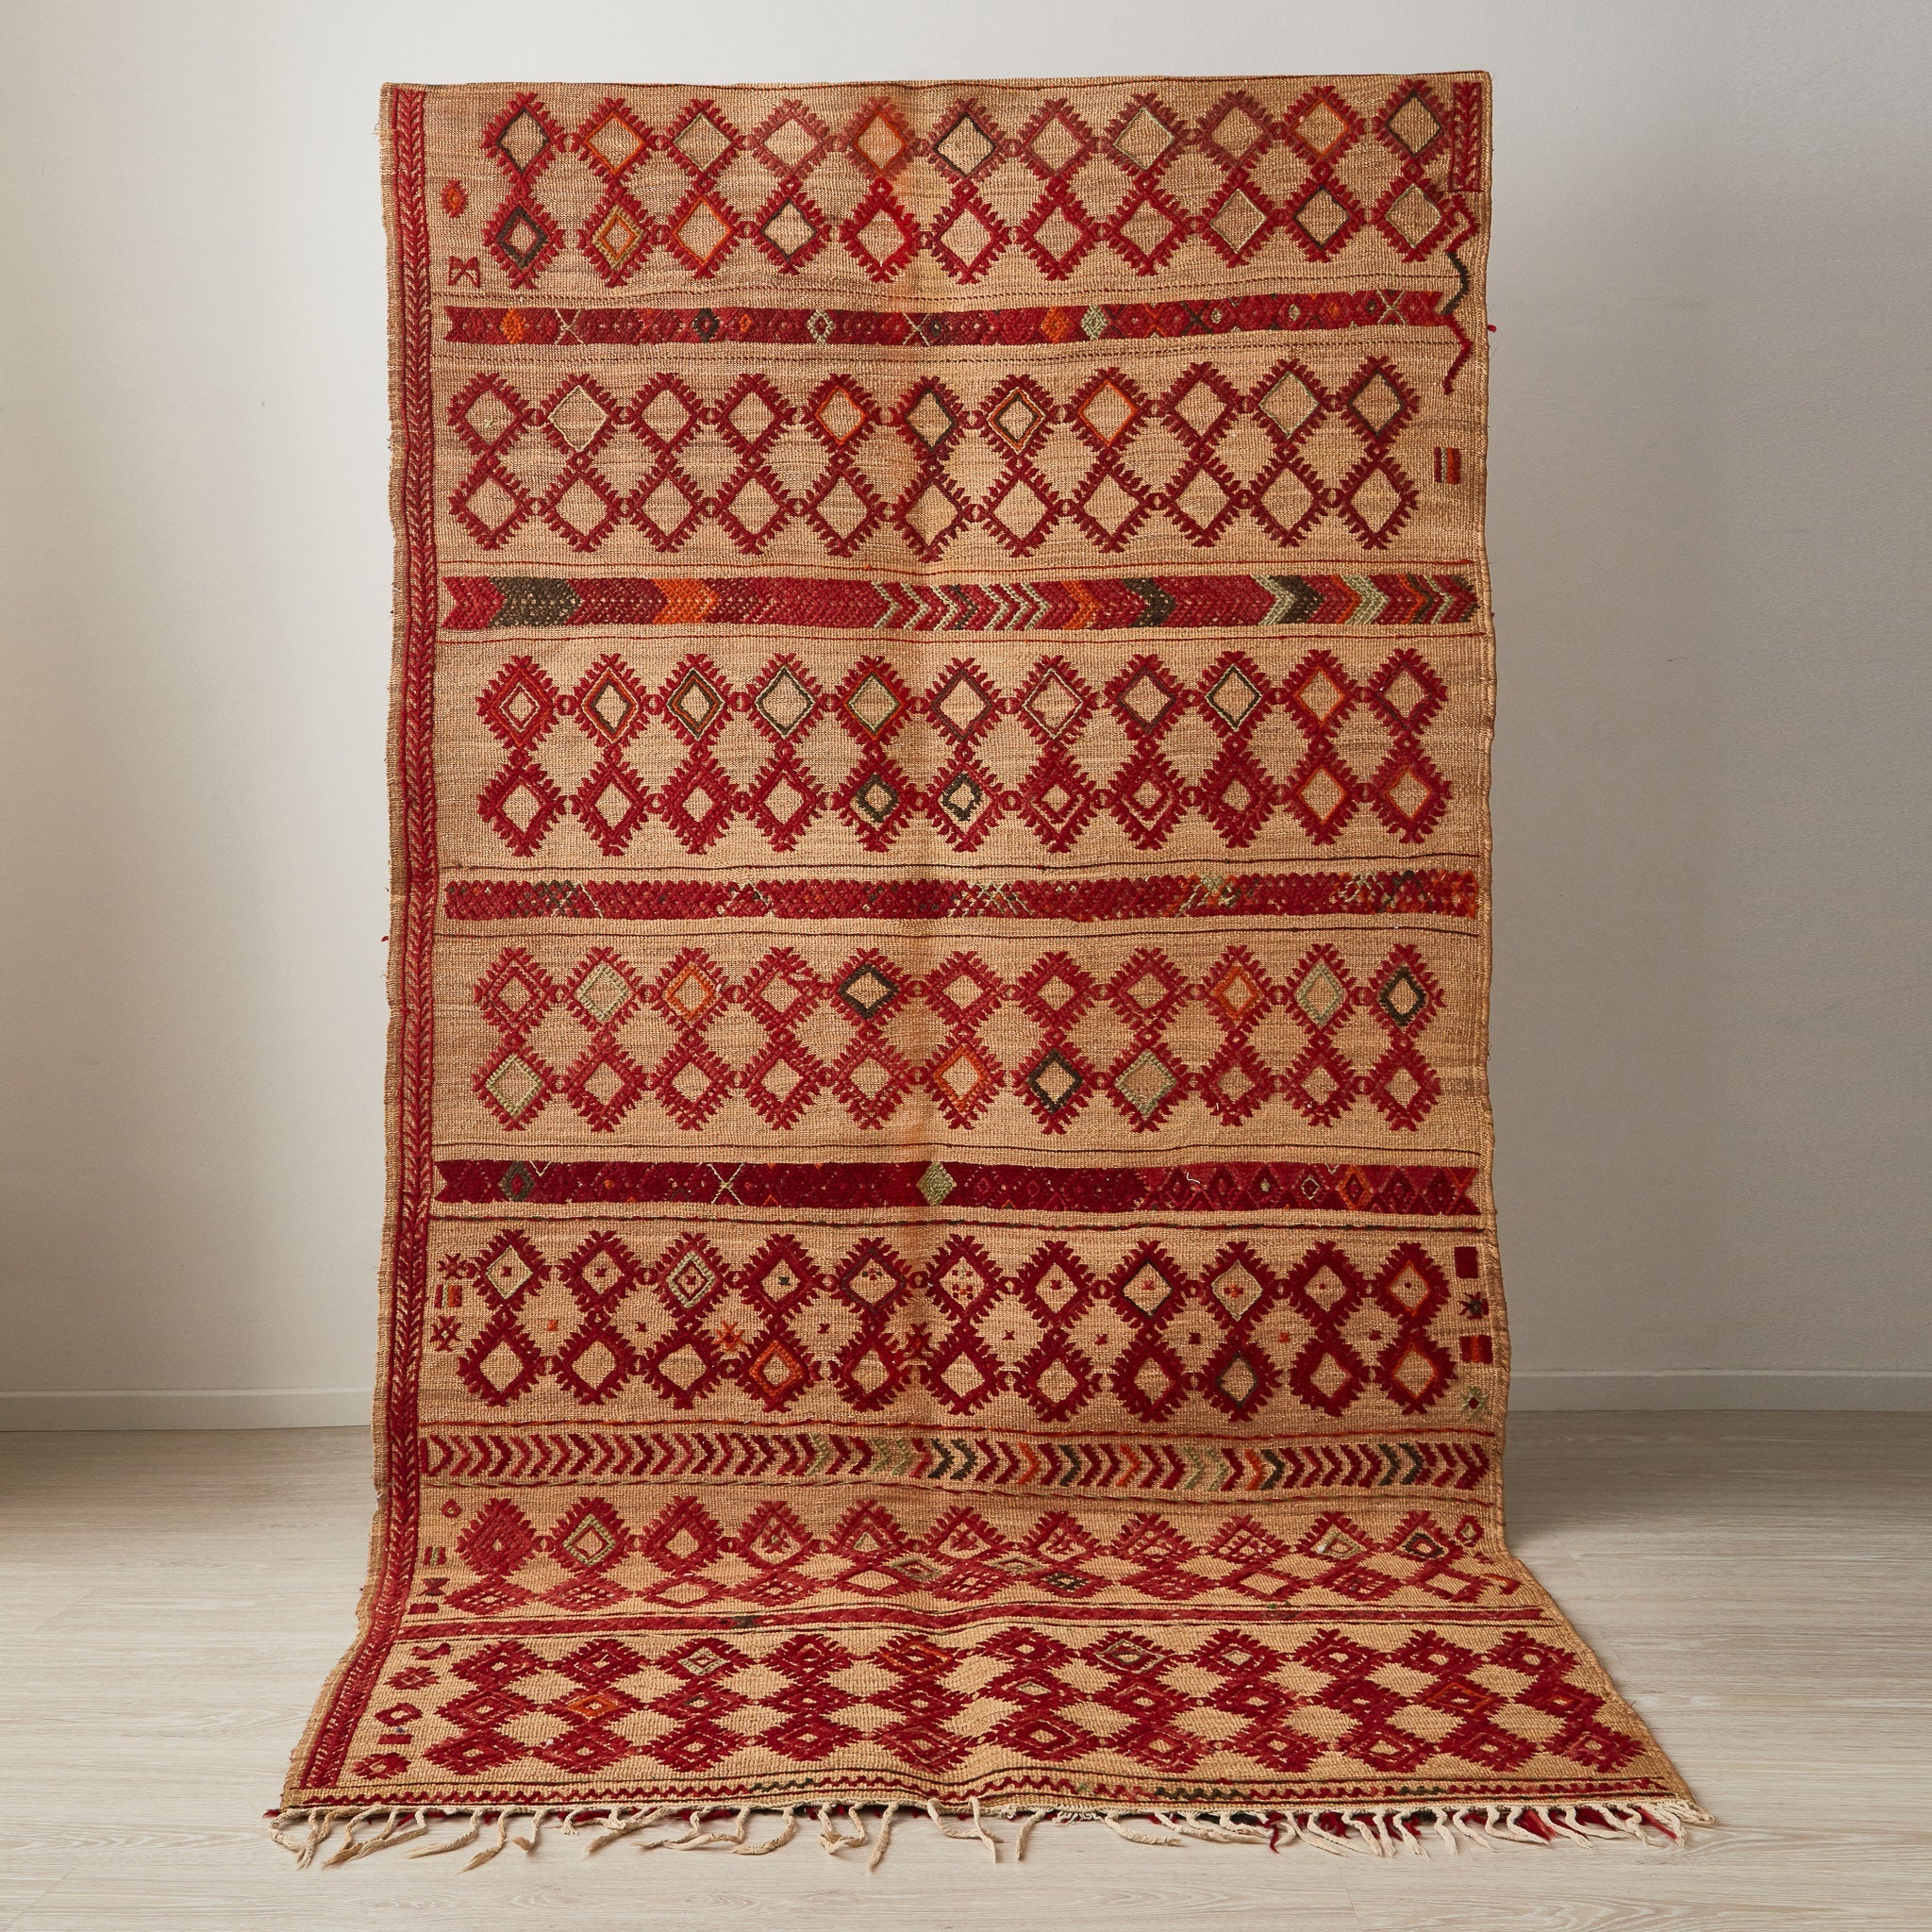 tappeto hassira in paglia con tessitura in lana rossa